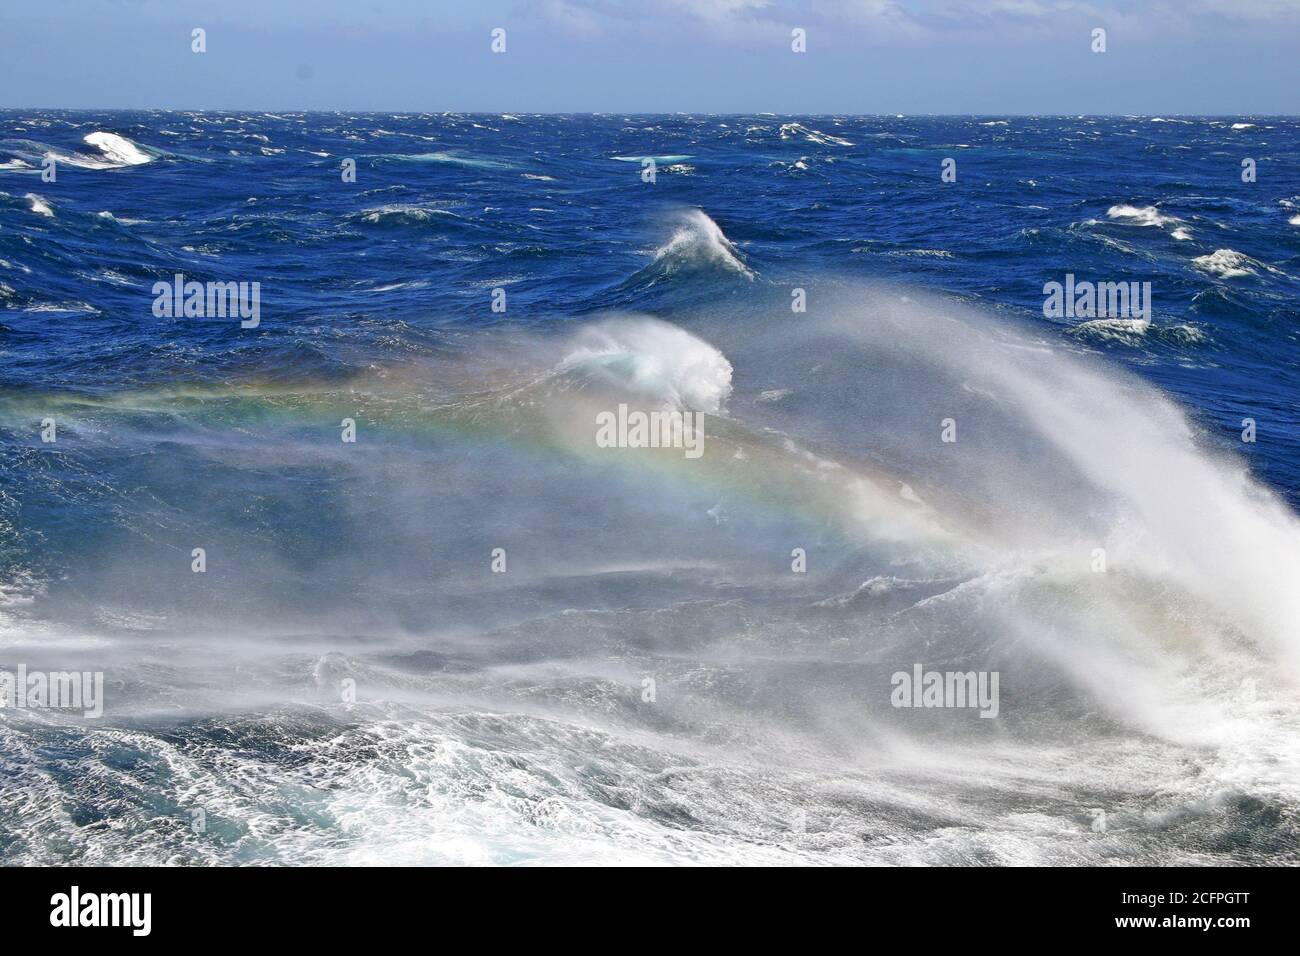 Mari accidentati dell'oceano pacifico meridionale, enormi onde con arcobaleno che si mostra nella schiuma proveniente dalla cima delle onde in crash, la Nuova Zelanda Foto Stock